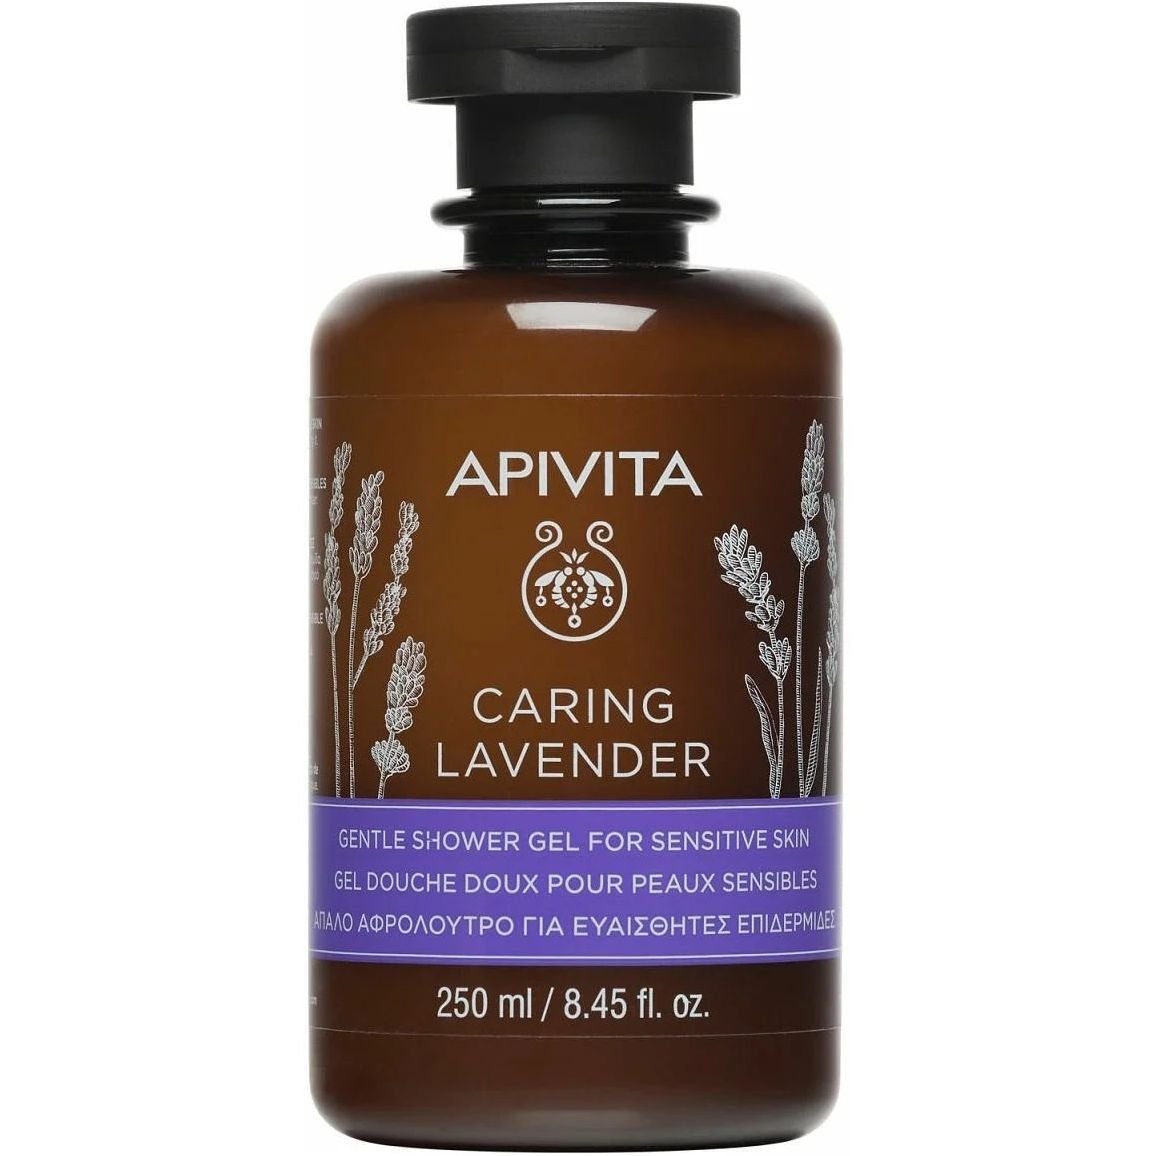 Нежный гель для душа Apivita Caring Lavender для чувствительной кожи, с лавандой, 250 мл - фото 1